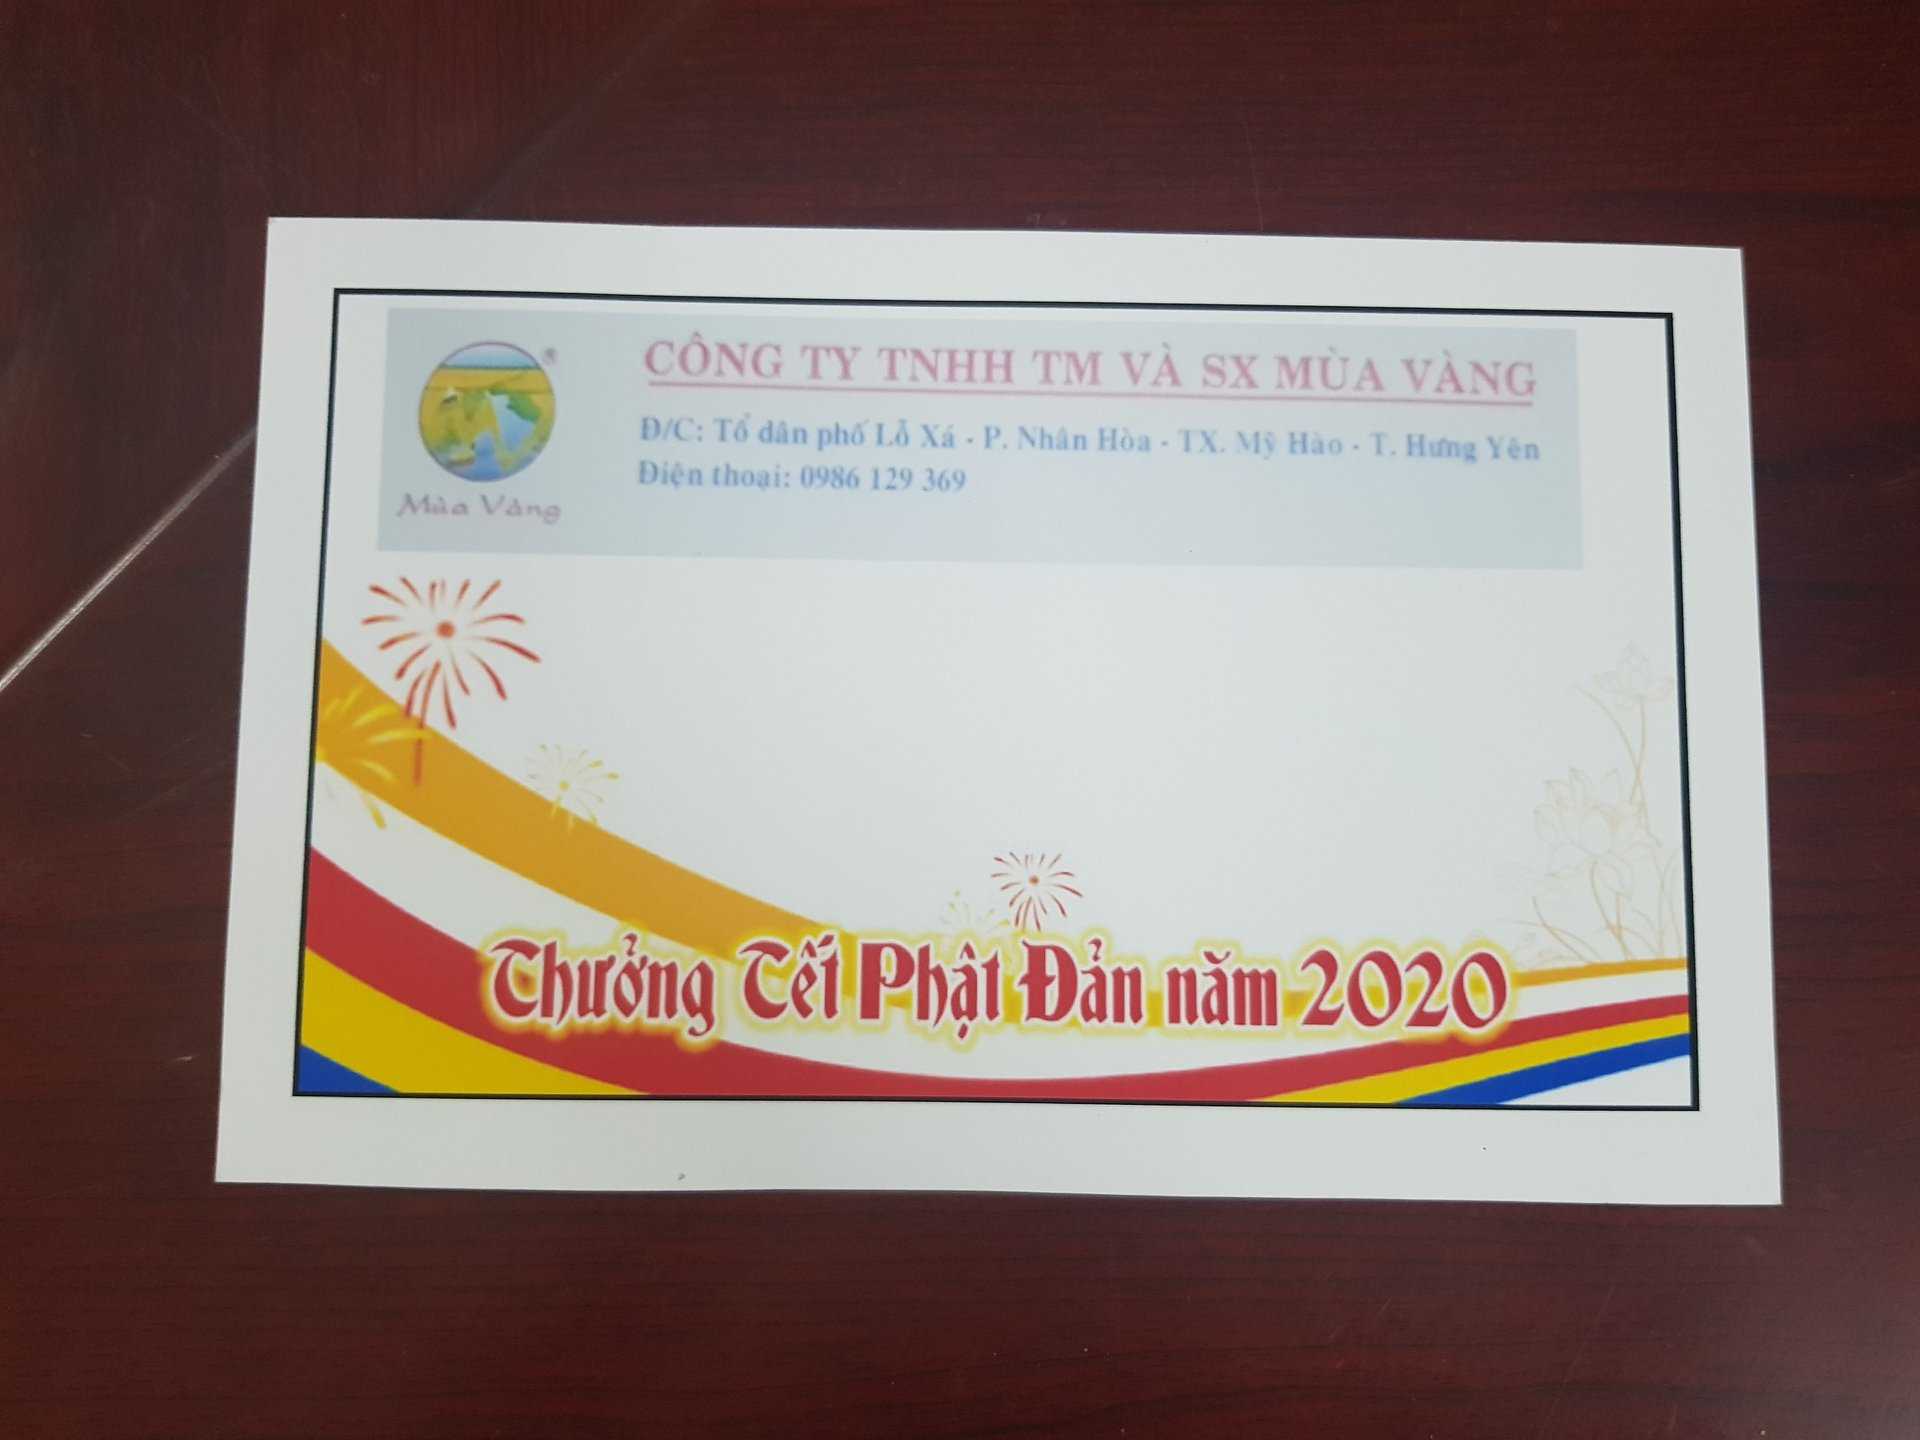 Công ty TNHH và SX Mùa Vàng của gia đình Phật tử Nguyễn Thị Kim Hoàn đã thưởng Tết Phật đản tới các công nhân viên tại công ty